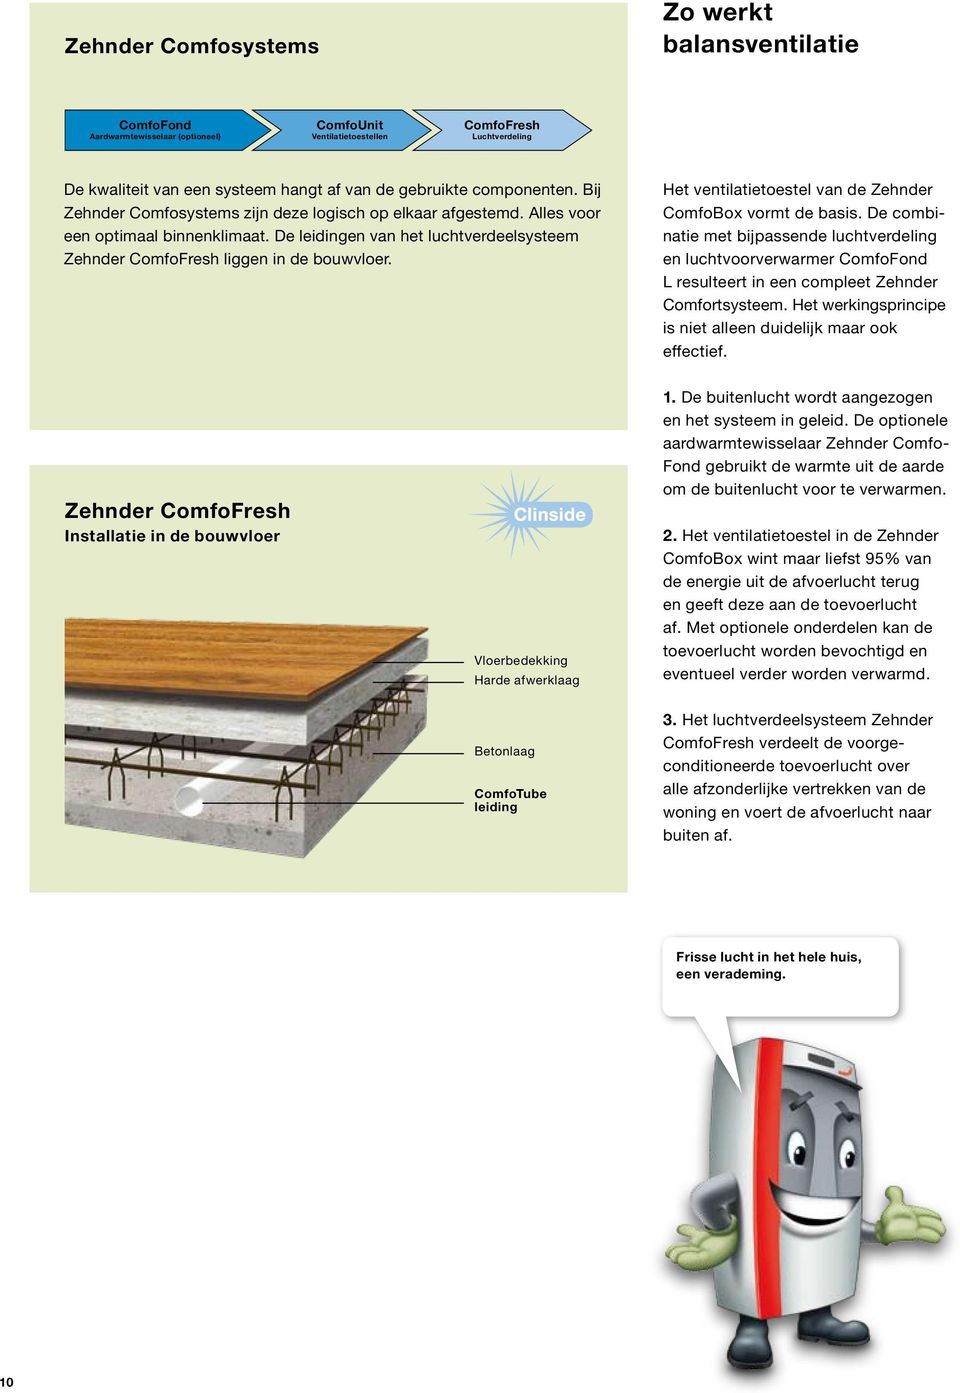 De leidingen van het luchtverdeelsysteem Zehnder ComfoFresh liggen in de bouwvloer. Het ventilatietoestel van de Zehnder ComfoBox vormt de basis.